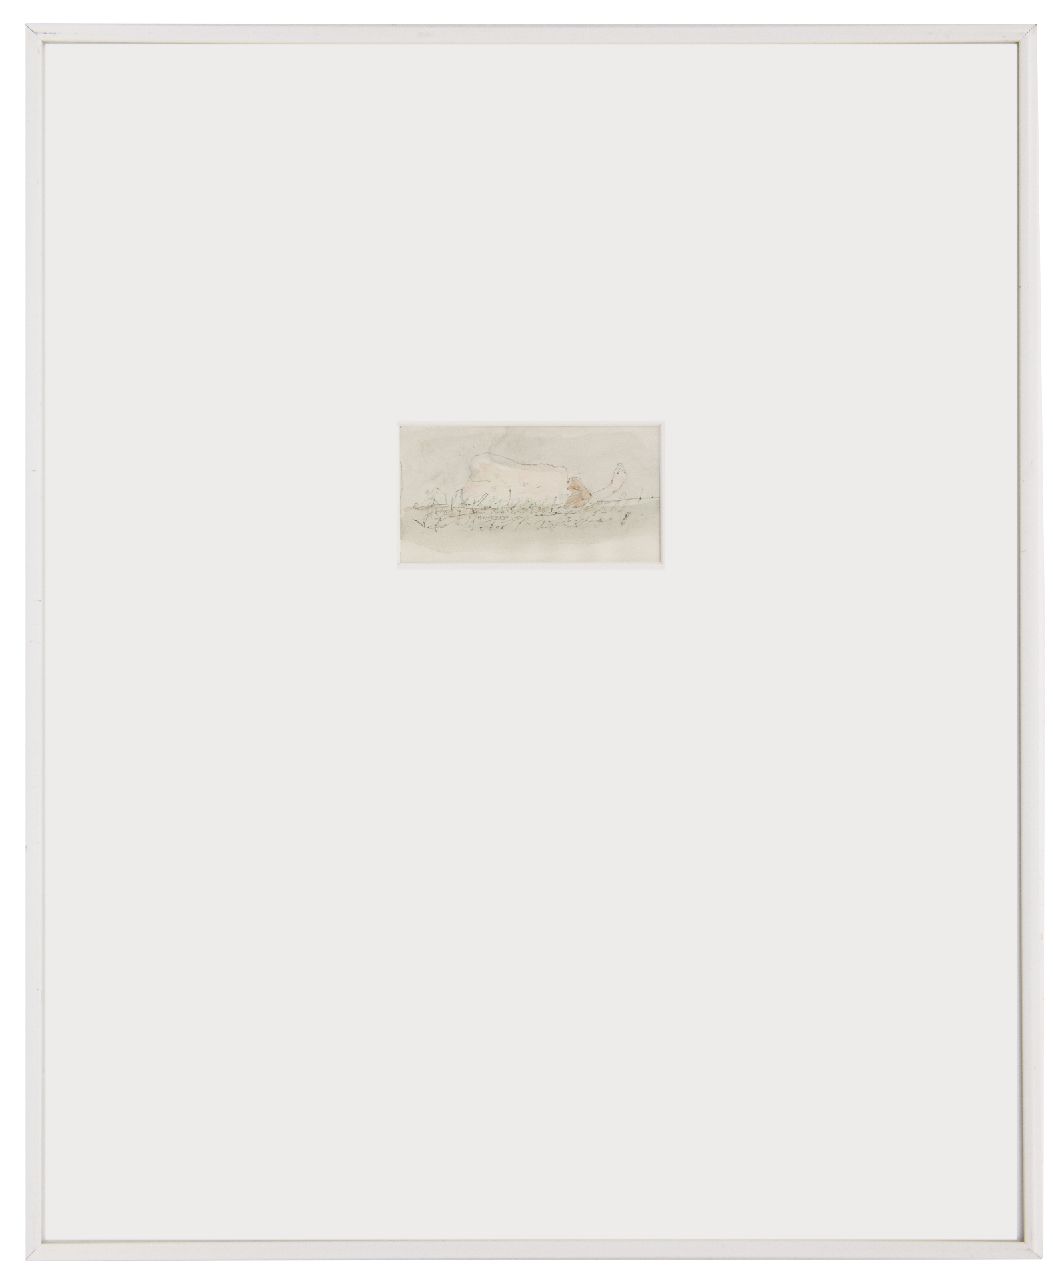 Westerik J.  | Jacobus 'Co' Westerik | Aquarellen en tekeningen te koop aangeboden | Rugnaakt buiten, pen en inkt, krijt en aquarel op papier 5,7 x 10,6 cm, gesigneerd middenonder en gedateerd 2008